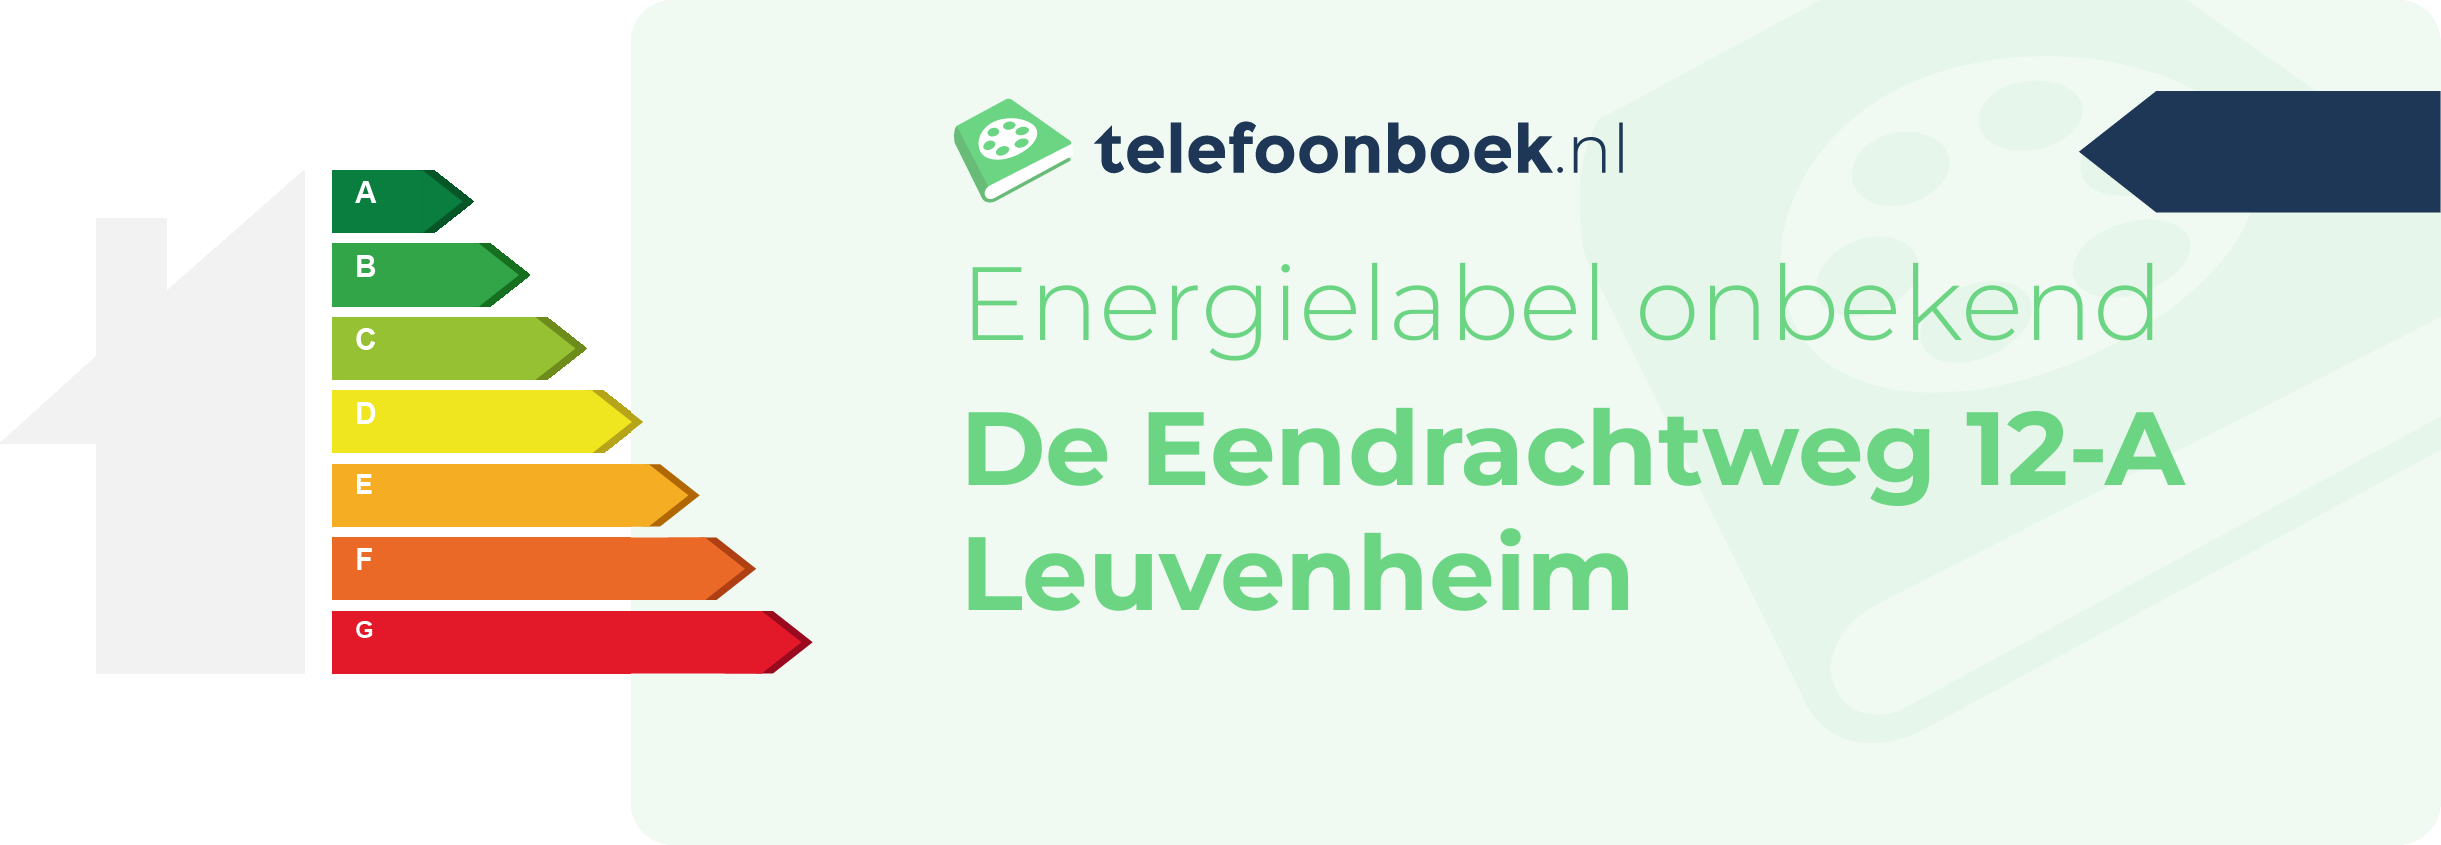 Energielabel De Eendrachtweg 12-A Leuvenheim